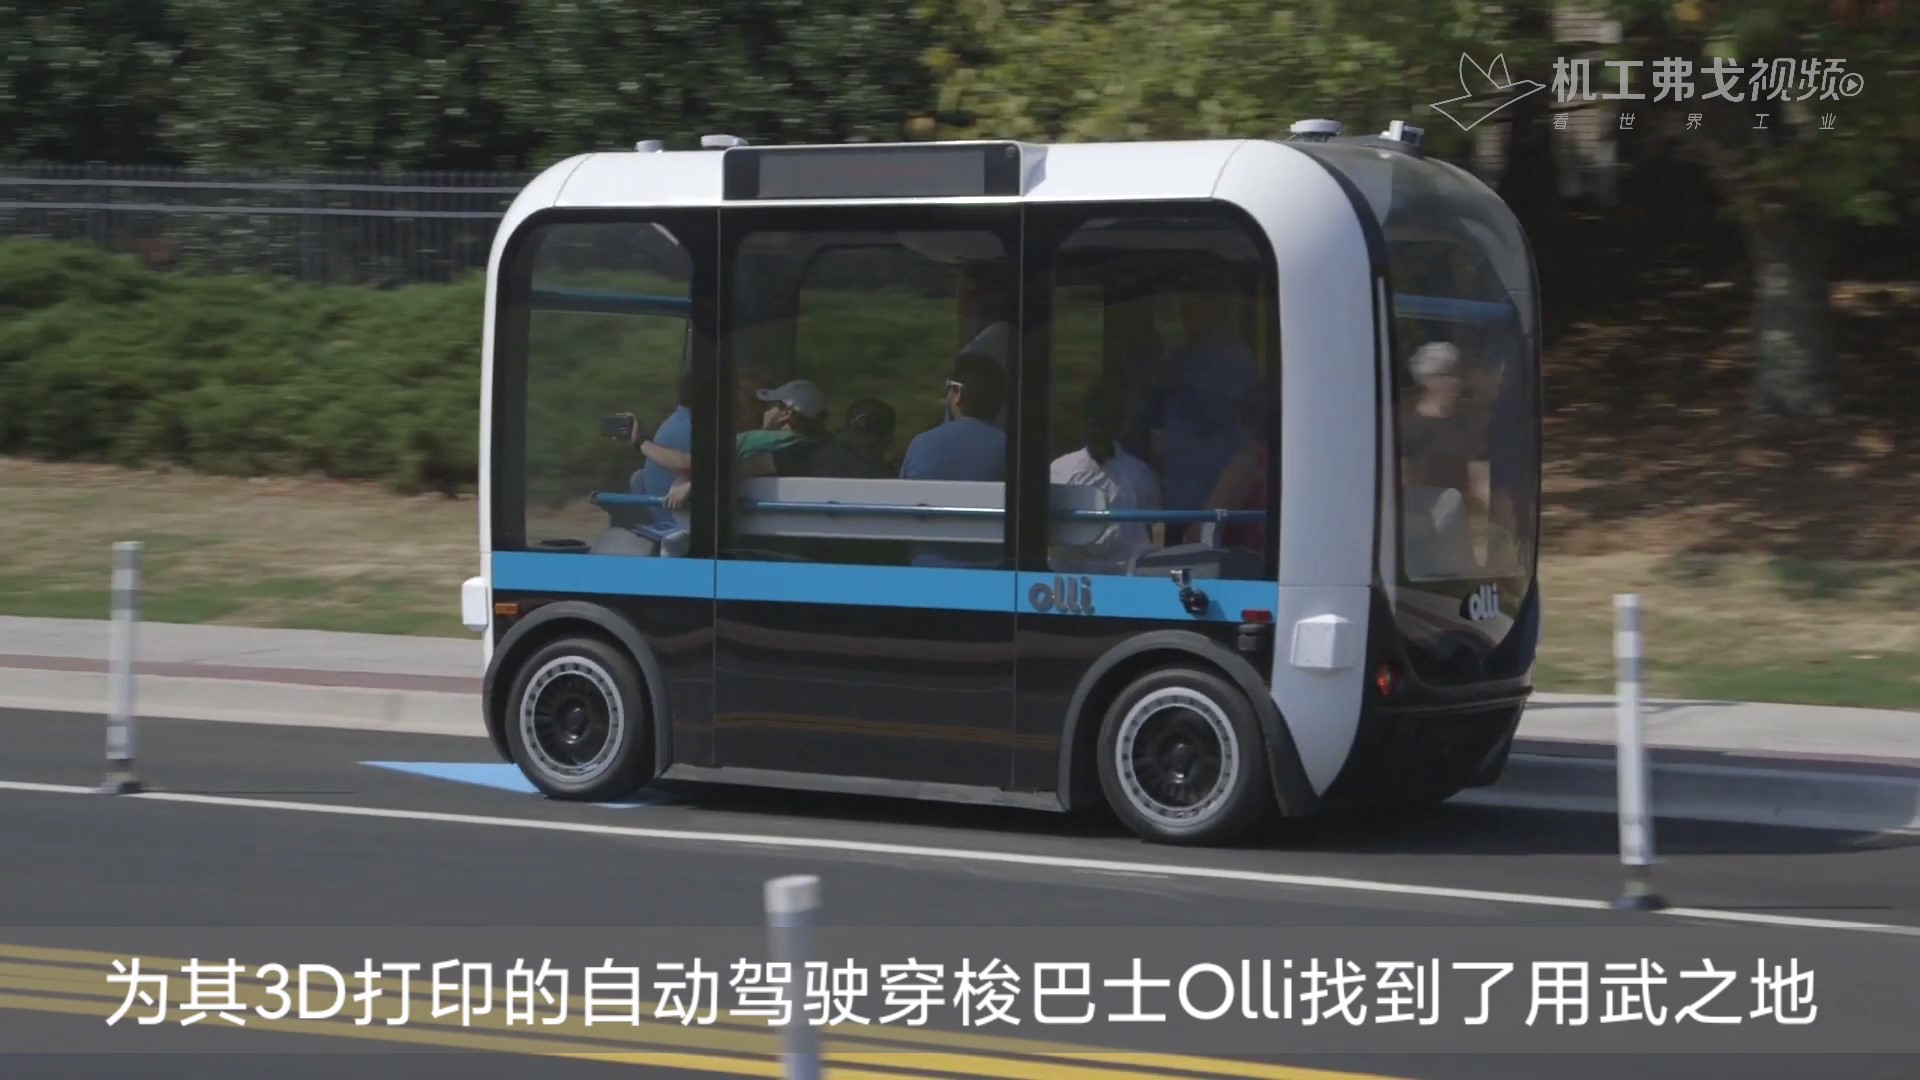 【弗戈工业趣闻】3D打印的自动驾驶穿梭巴士